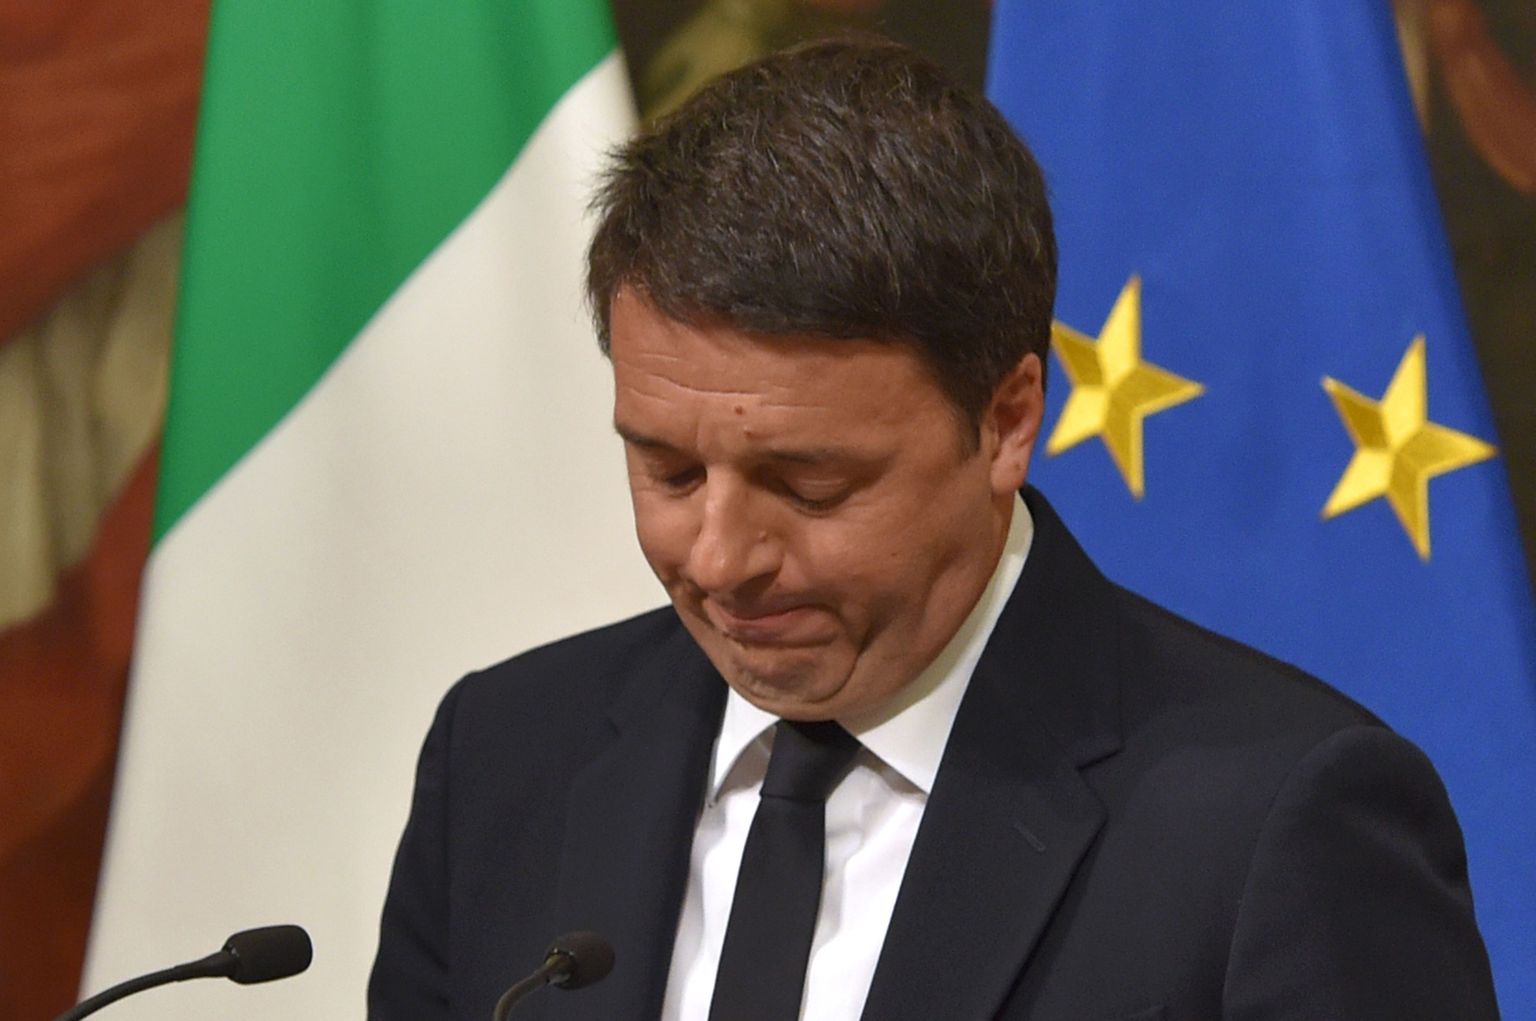 Itaalia peaminister Matteo Renzi teatab tagasiastumisest pärast tema algatatud referendumi läbikukkumist.